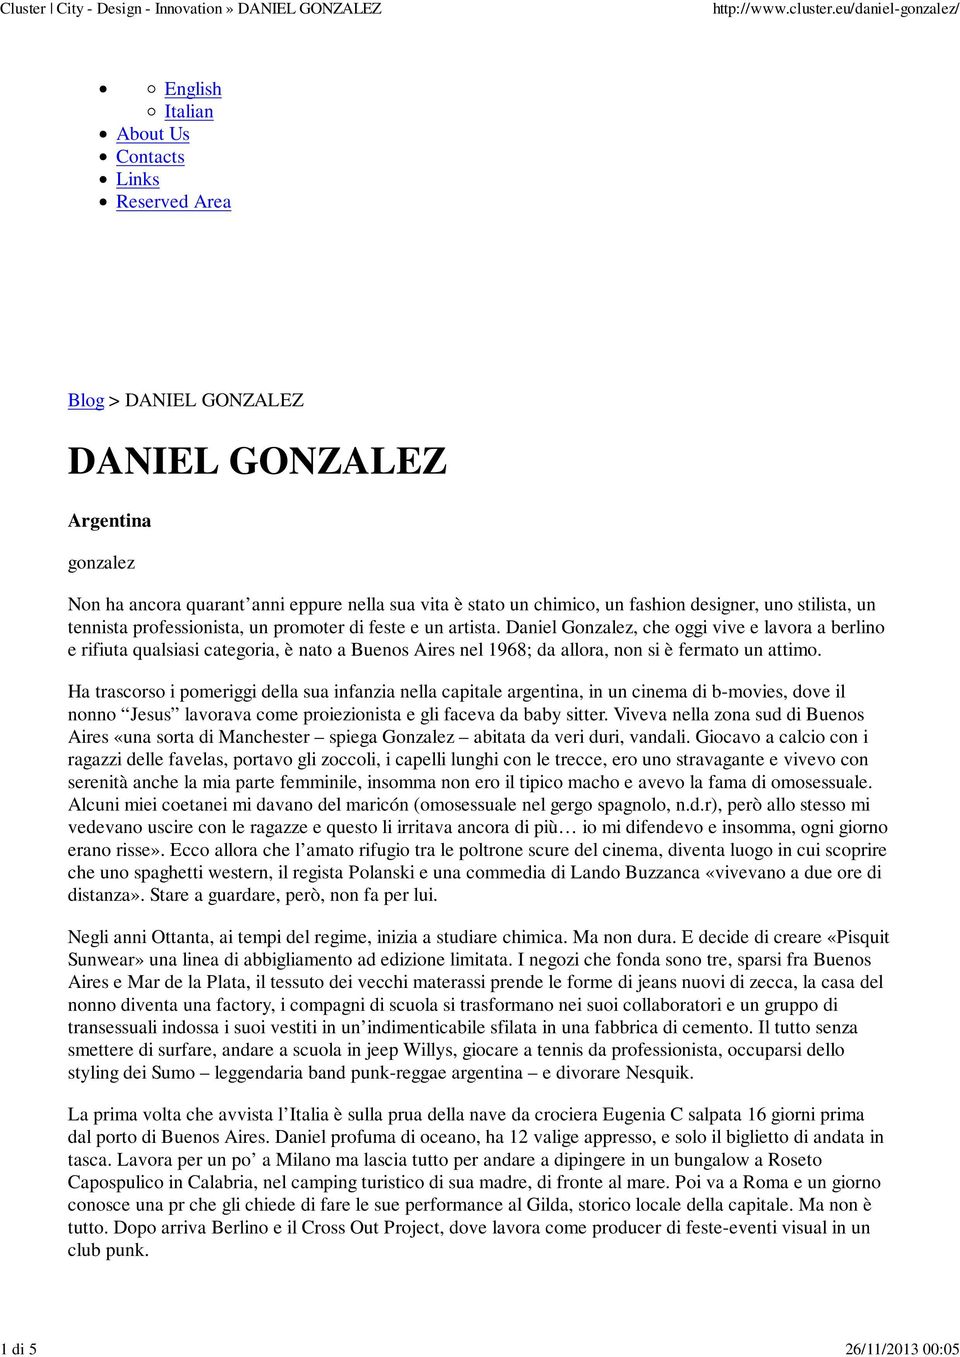 Daniel Gonzalez, che oggi vive e lavora a berlino e rifiuta qualsiasi categoria, è nato a Buenos Aires nel 1968; da allora, non si è fermato un attimo.